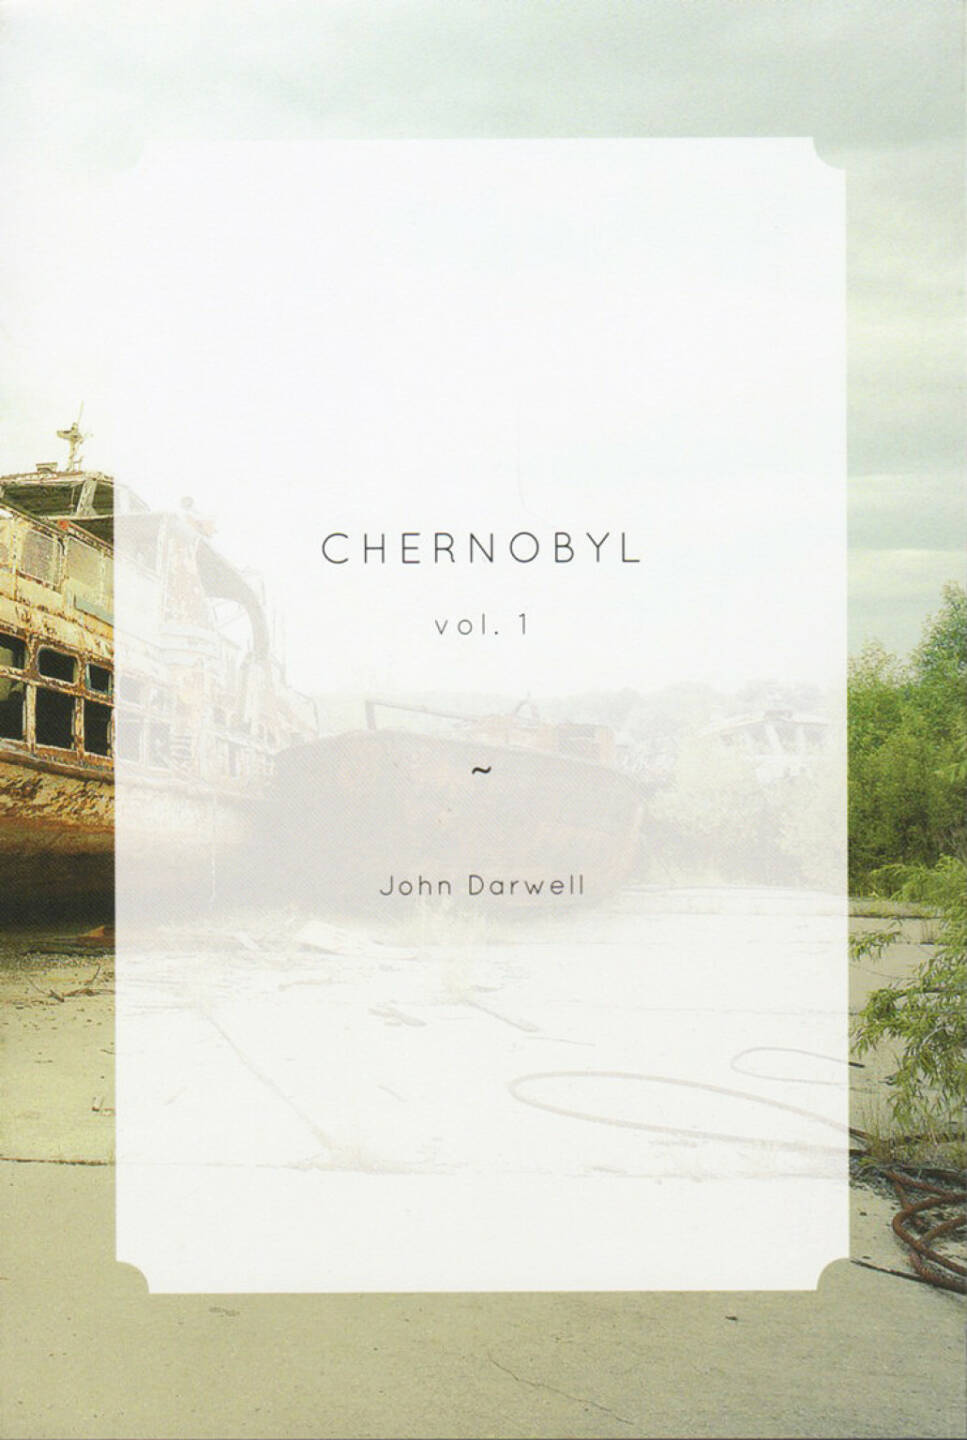 John Darwell - Chernobyl vol. 1, The Velvet Cell, 2014, Cover, http://josefchladek.com/book/john_darwell_-_chernobyl_vol_1